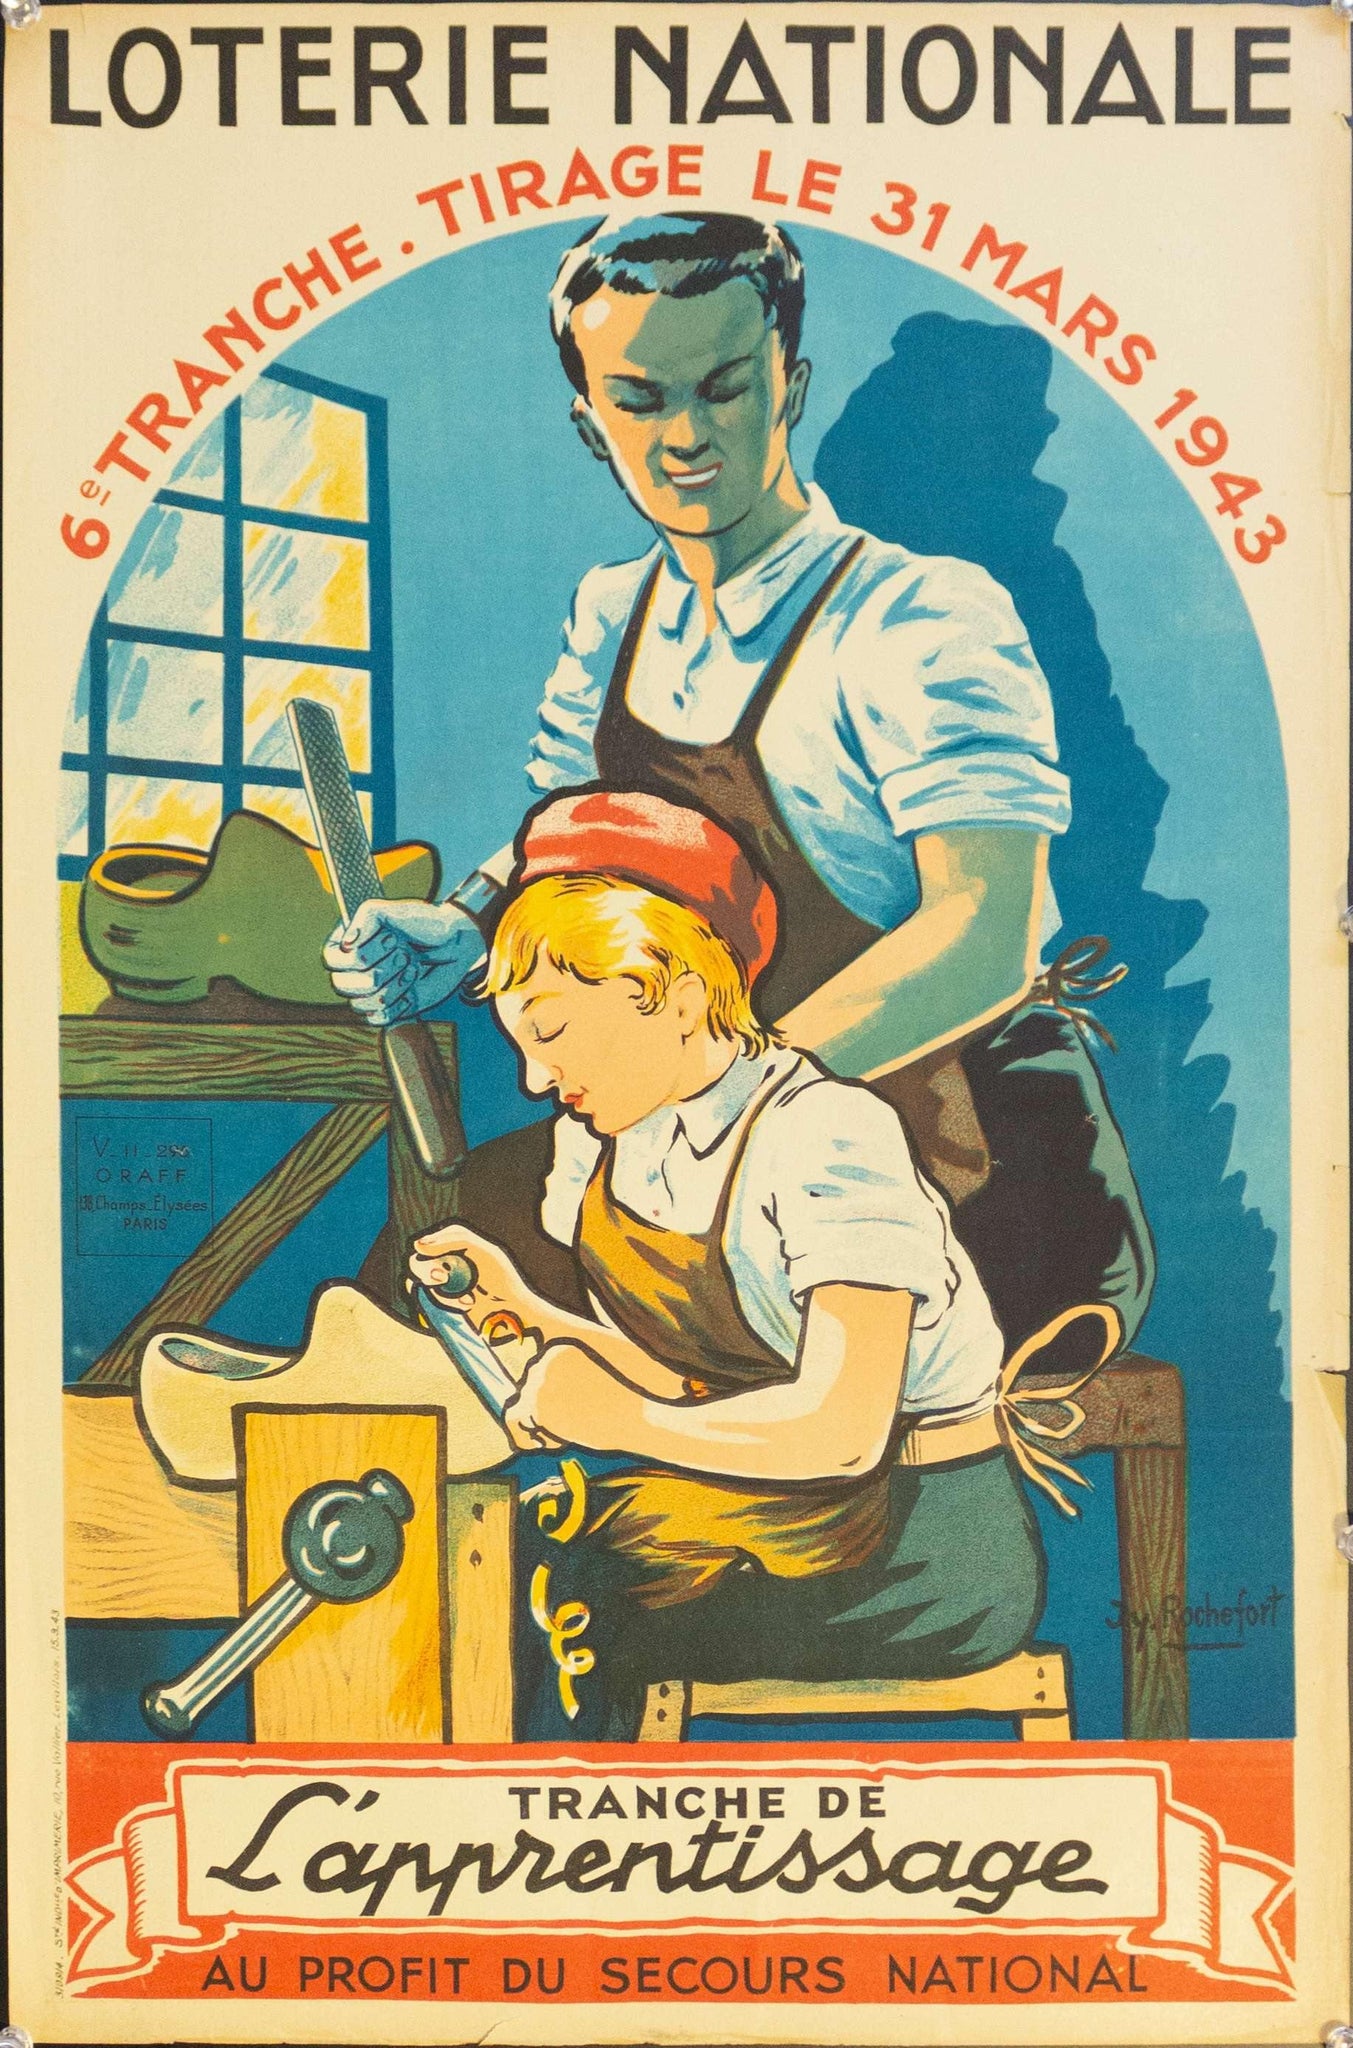 1943 Tranche De L'apprentissage Au Profit Secours National | Loterie Nationale - Golden Age Posters